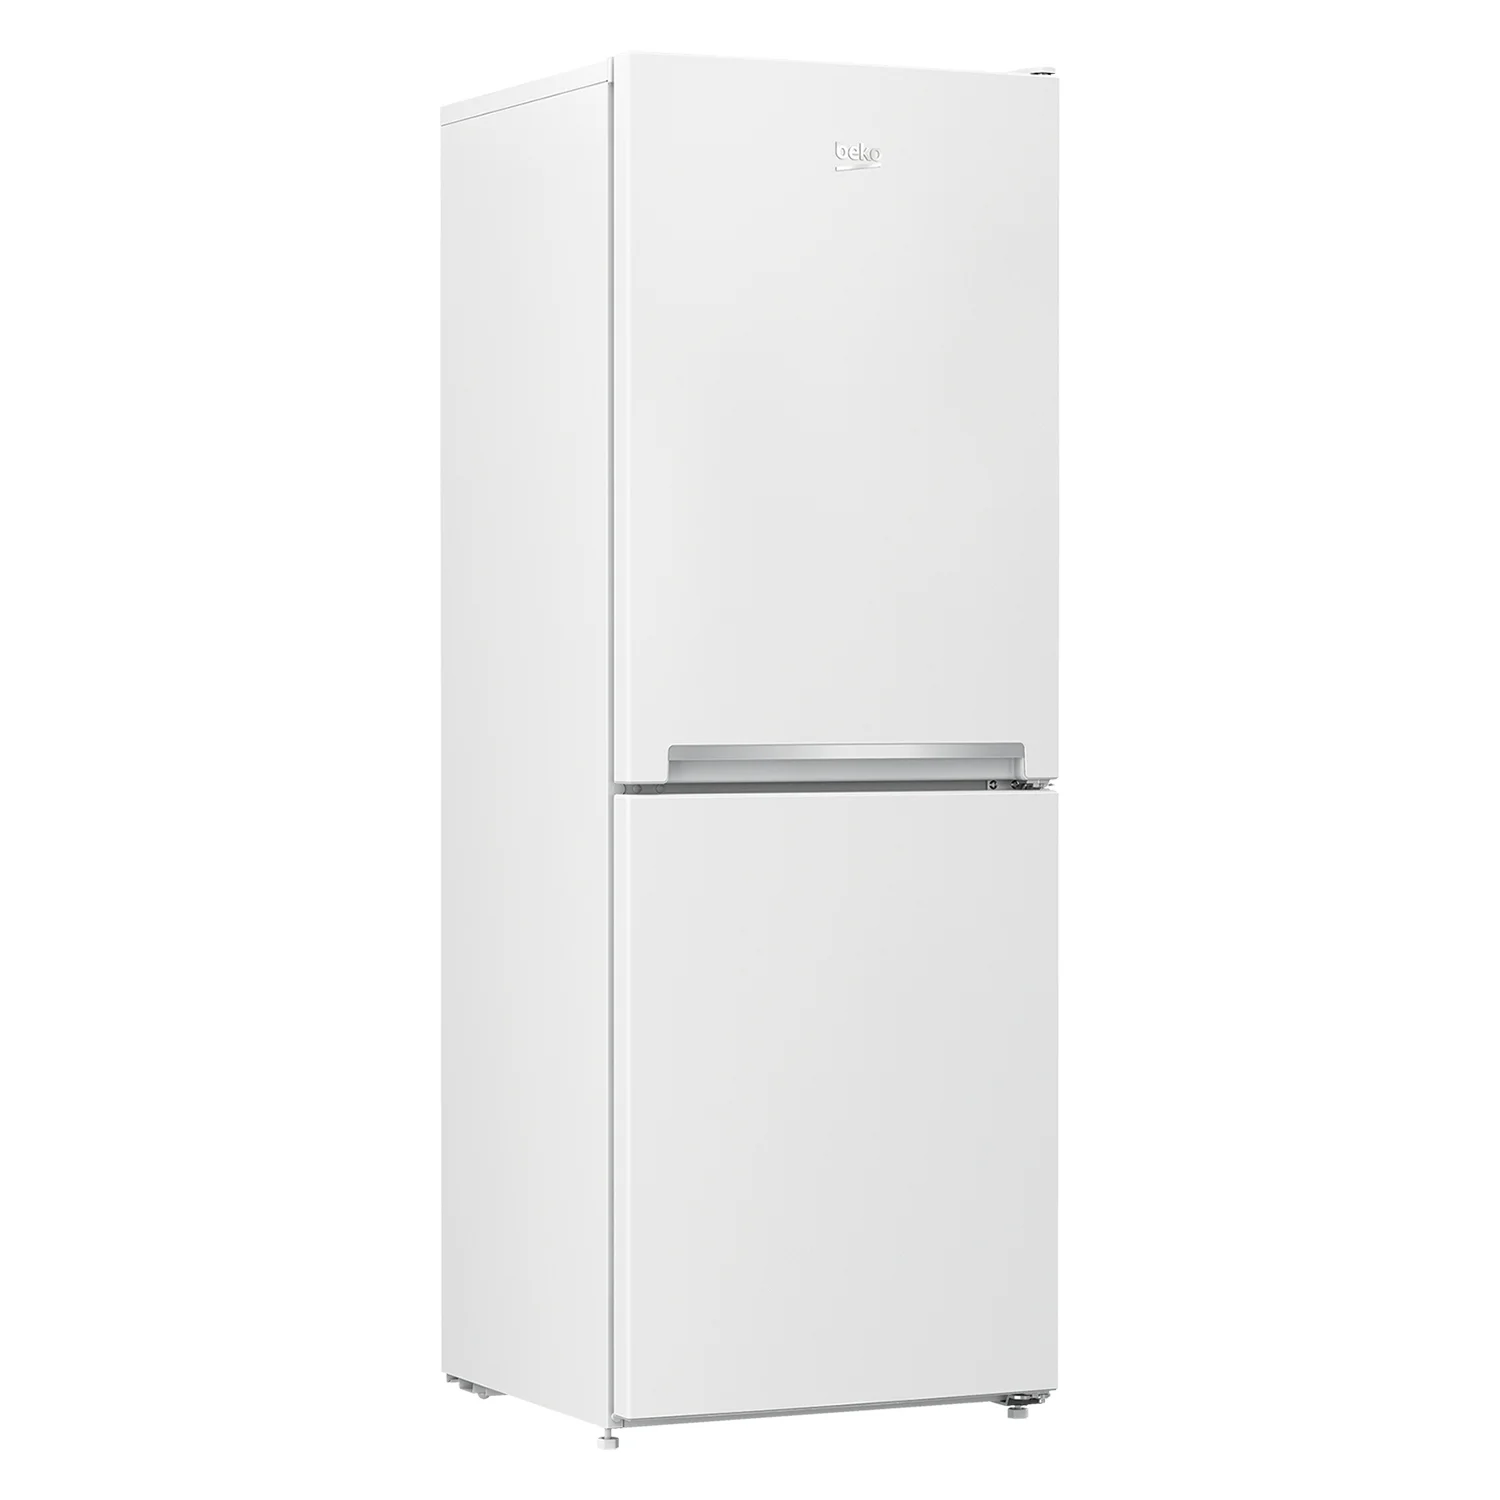 Bočna i prednja strana samostojećeg frižidera sa zamrzivačem Beko, bijeli, dvoja vrata